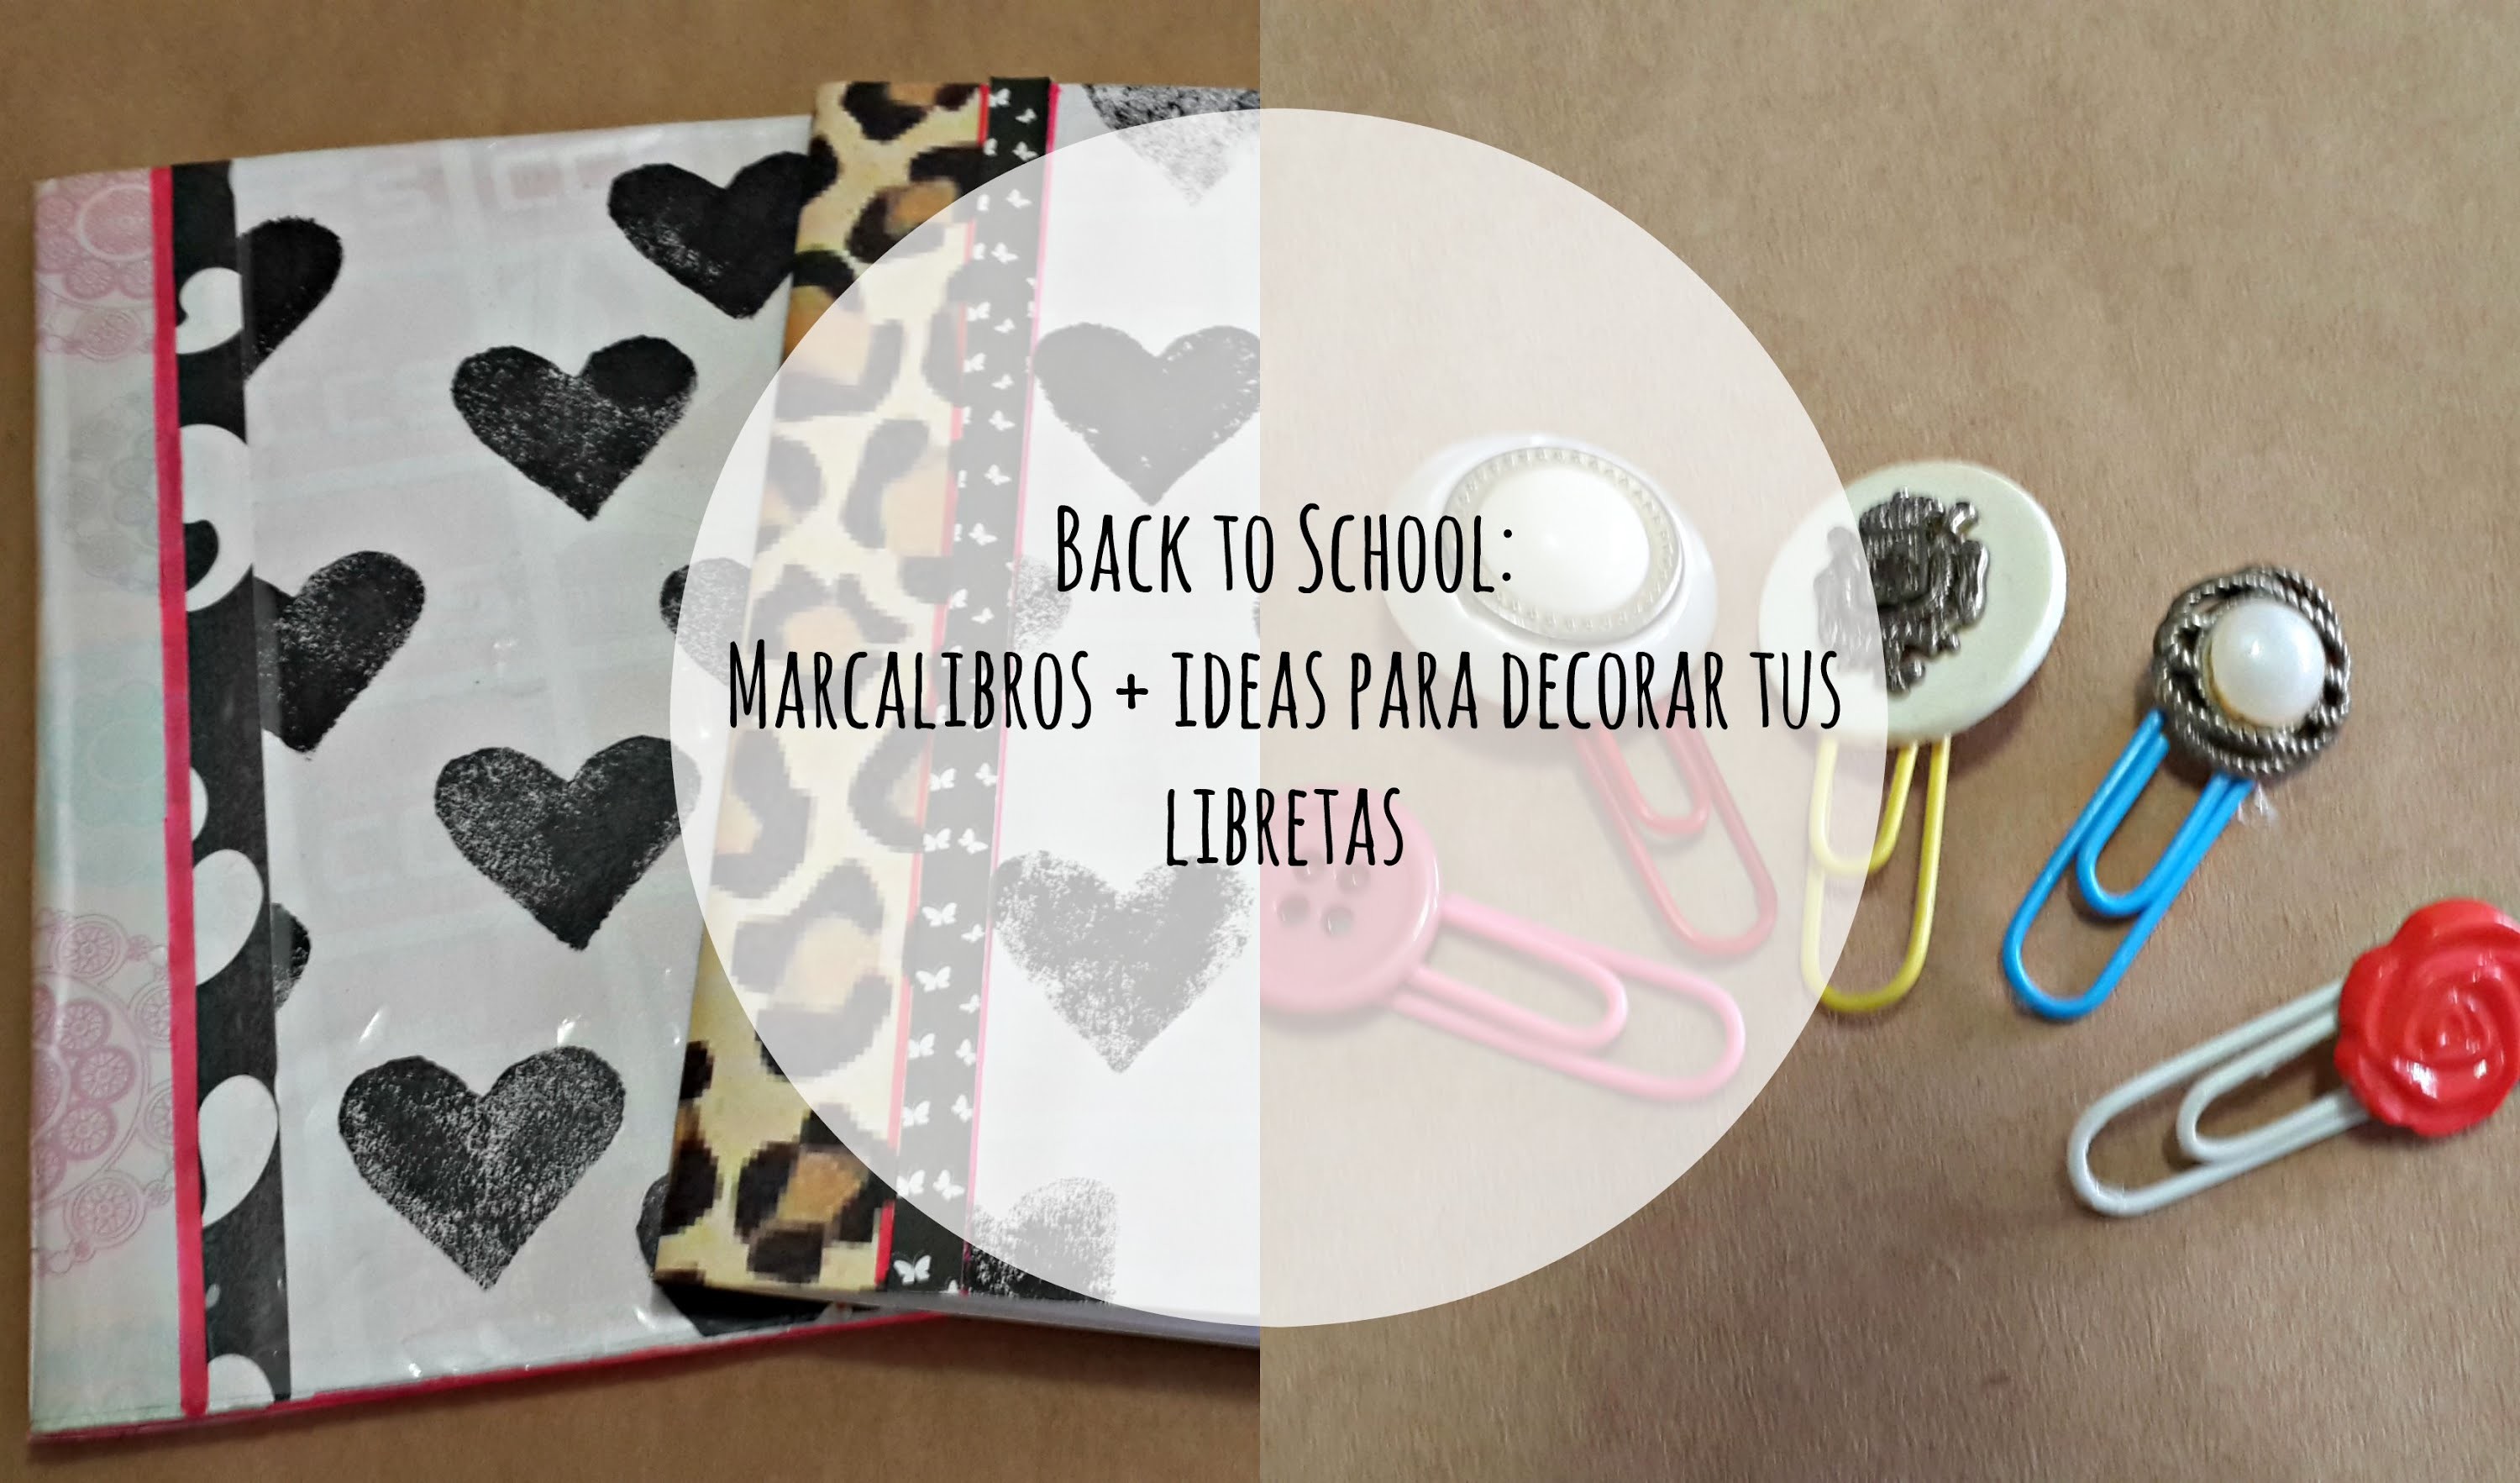 Back to School 2014: DIY Marcalibros + Ideas para decorar tus libretas | El Baul de Carmencita